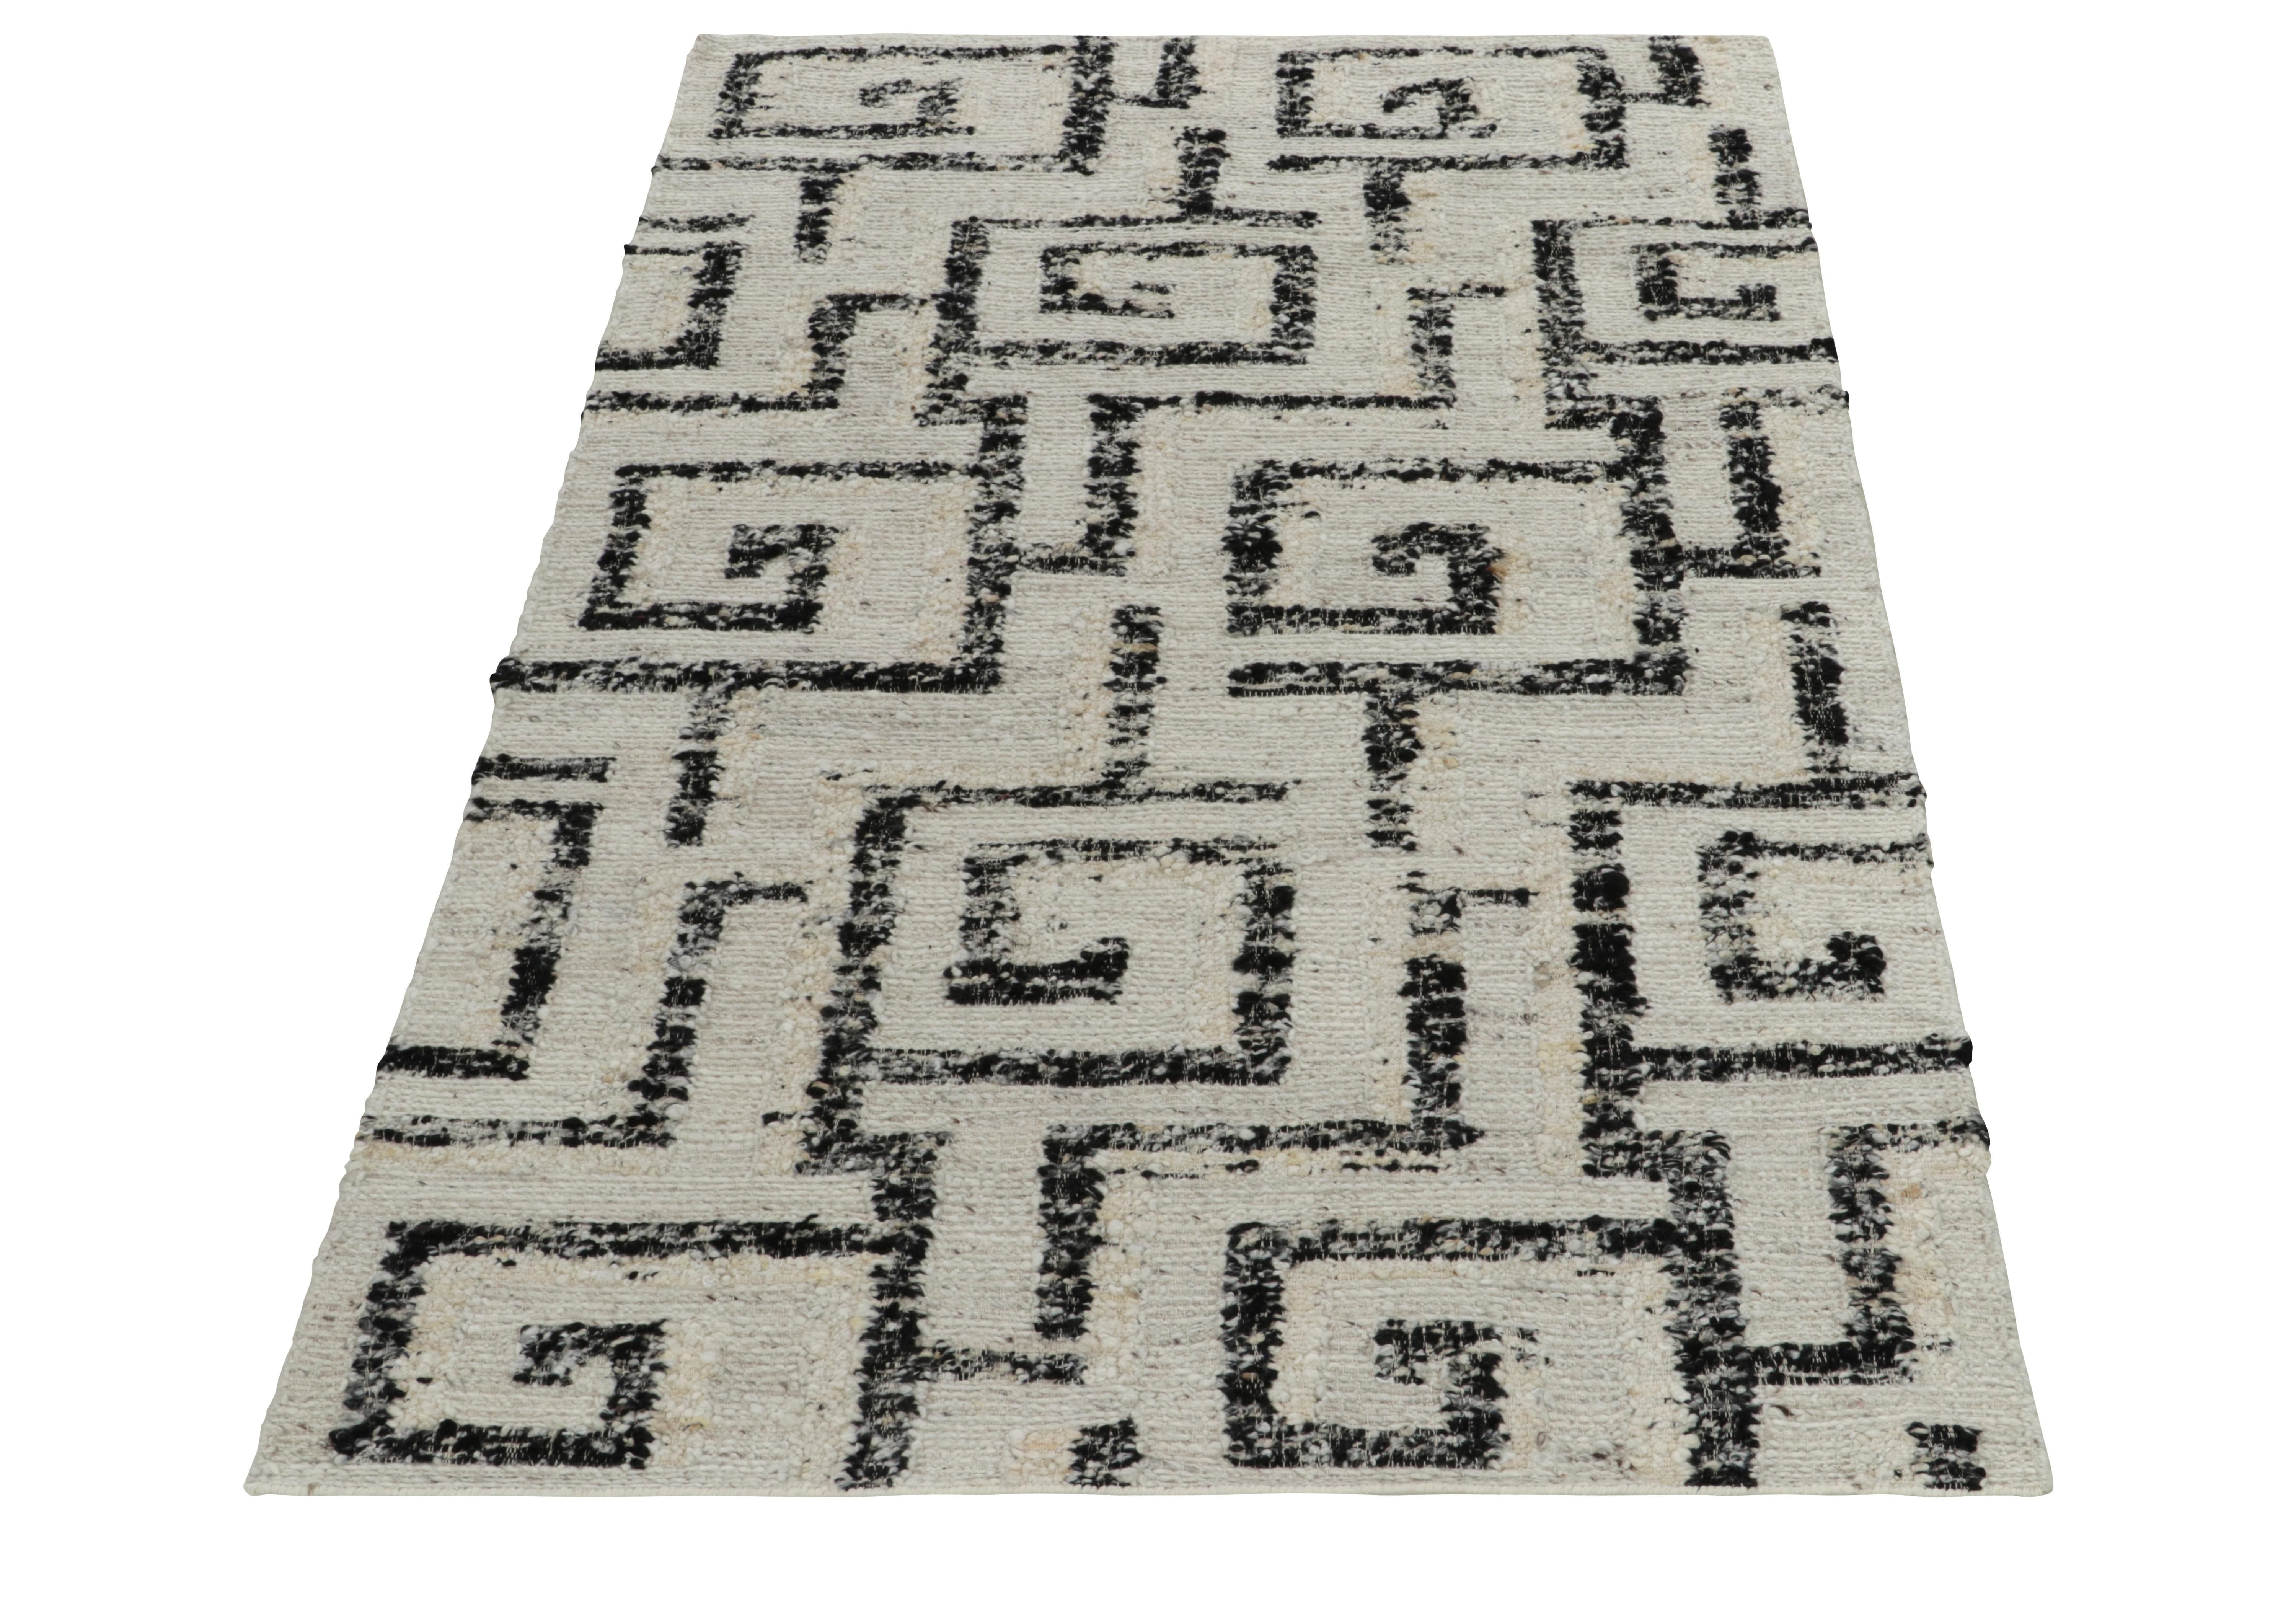 Rug & Kilim enthüllt seine Innovation in Stil und Technik mit diesem flach gewebten Teppich (5x8), der kühne Positiv-Negativ-Farbtöne und Art-Déco-Stil erforscht. Der Kelim zeichnet sich durch ein modernes geometrisches Muster in Elfenbein und